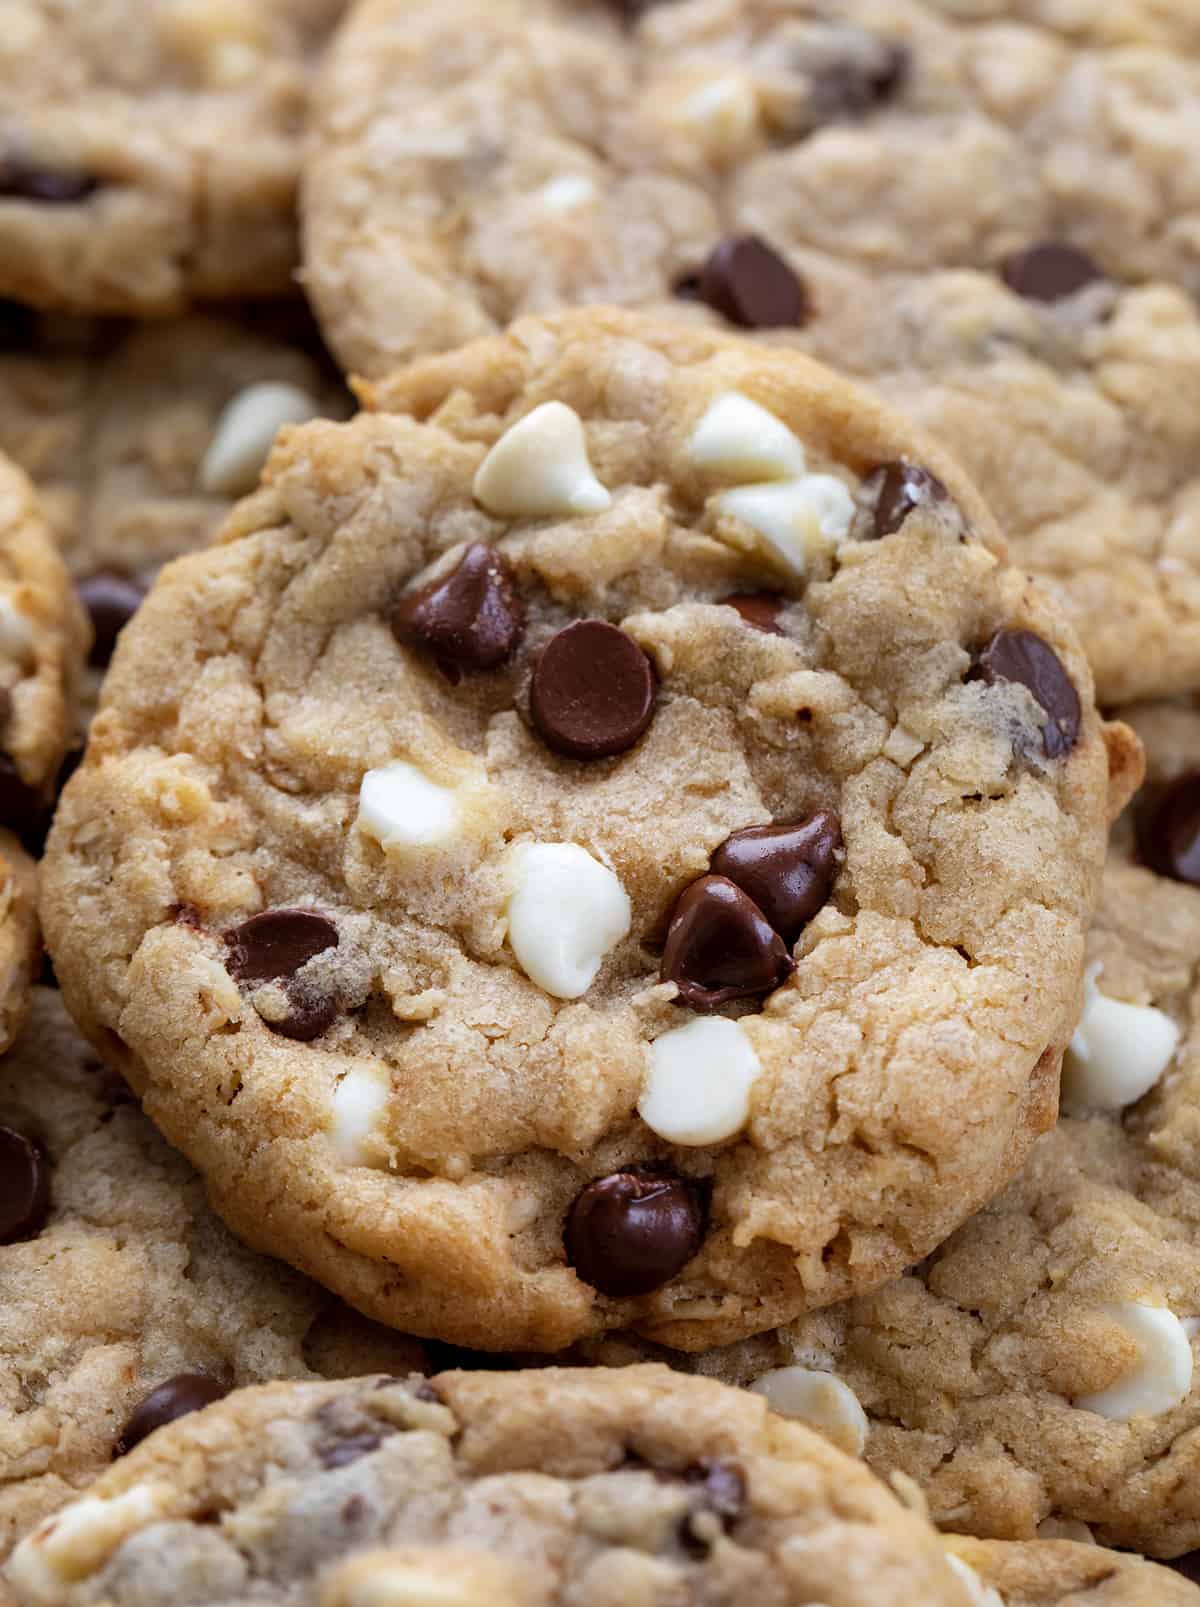 https://iambaker.net/wp-content/uploads/2014/07/marry-me-cookies-3-1.jpg